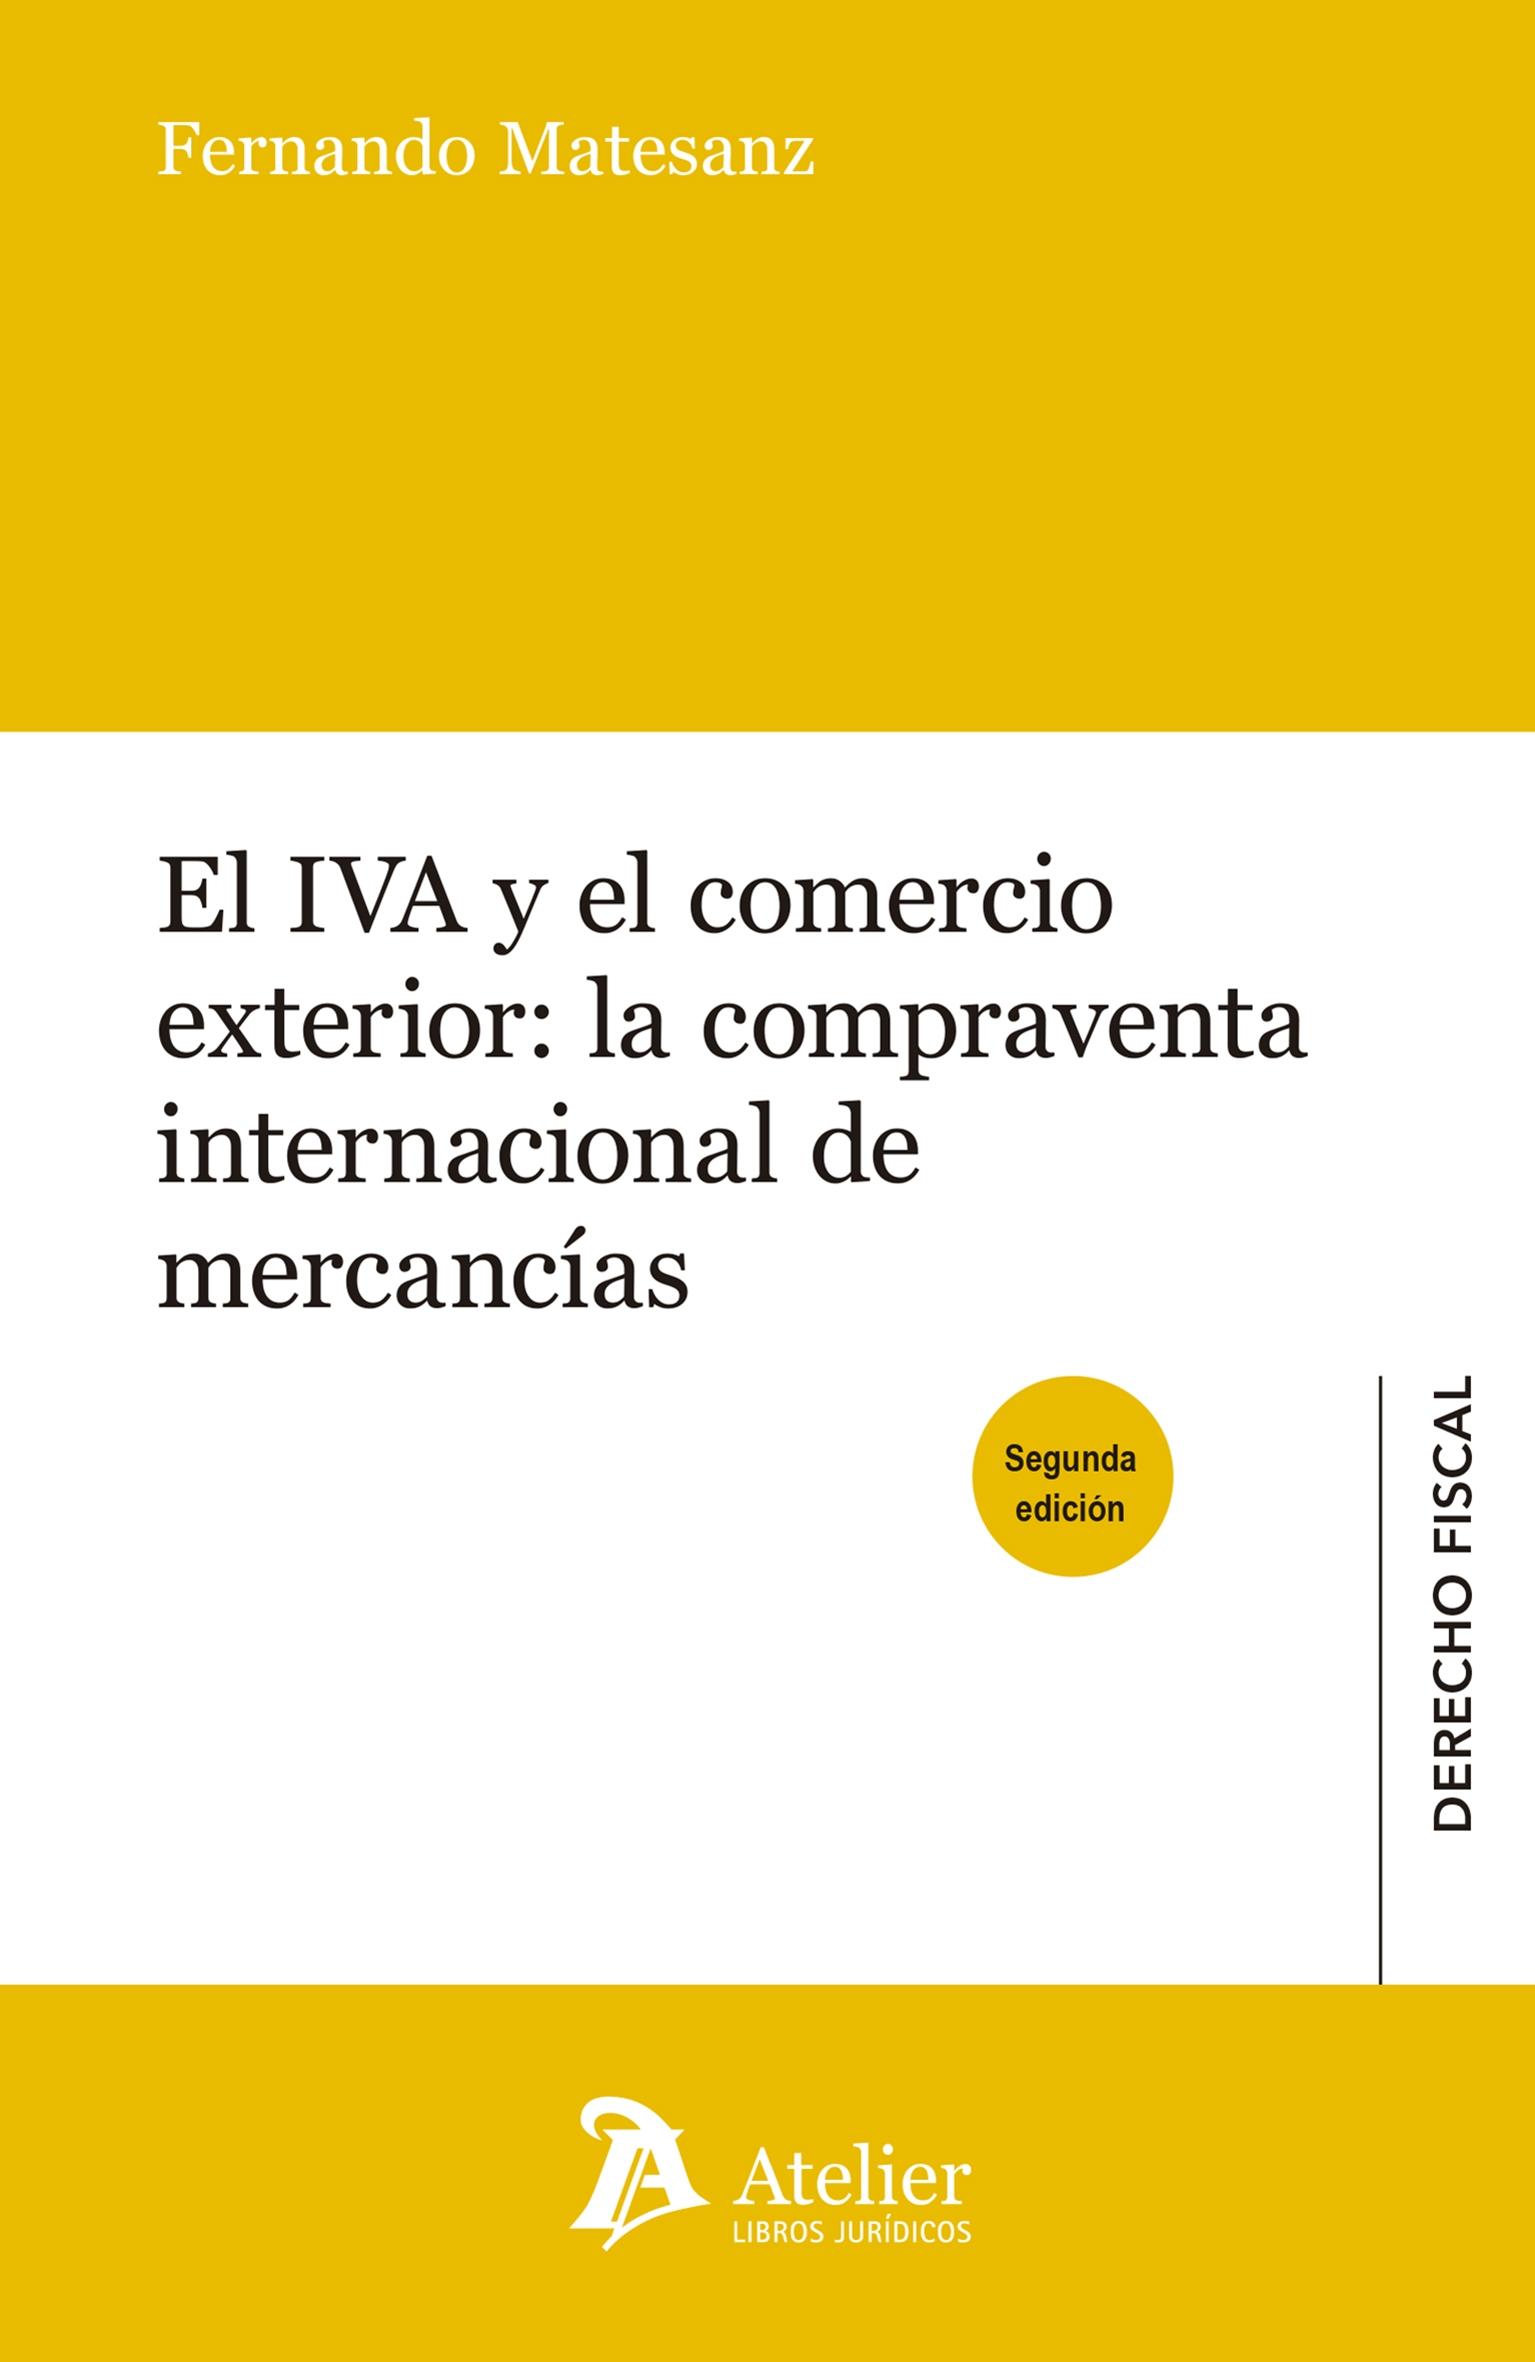 El IVA y el comercio exterior: la compraventa internacional de mercancias